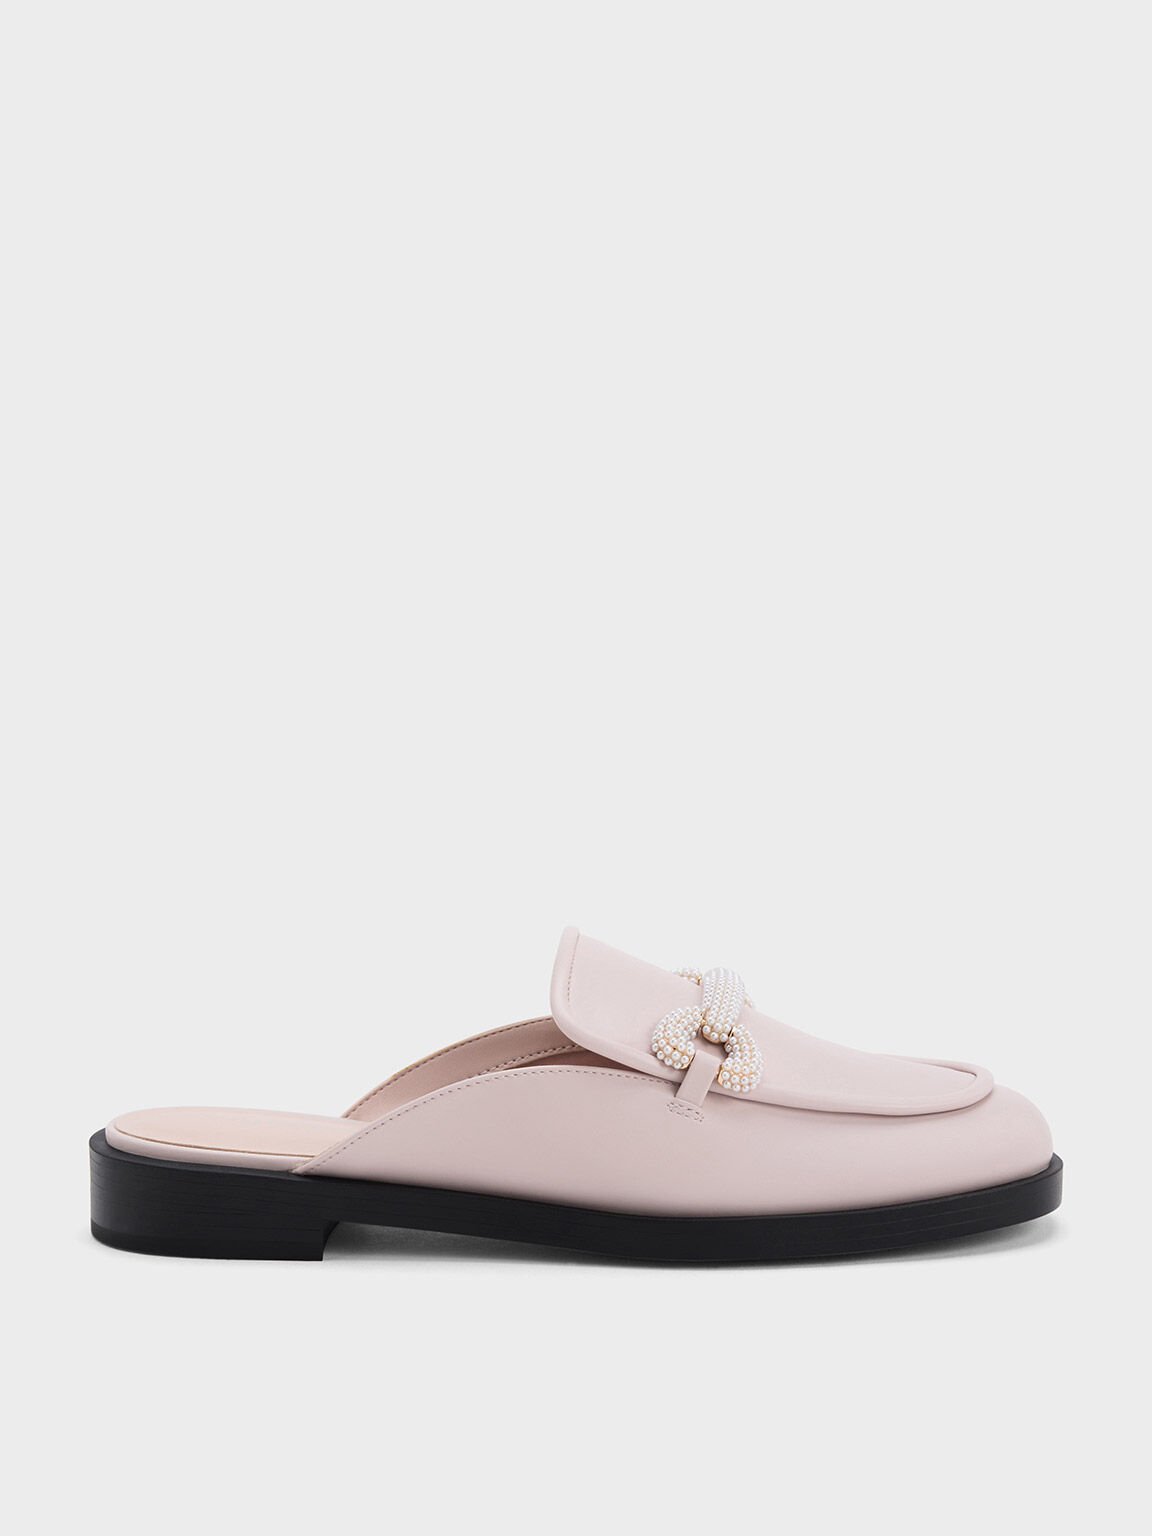 珍珠馬銜釦樂福懶人鞋, 嫩粉色, hi-res